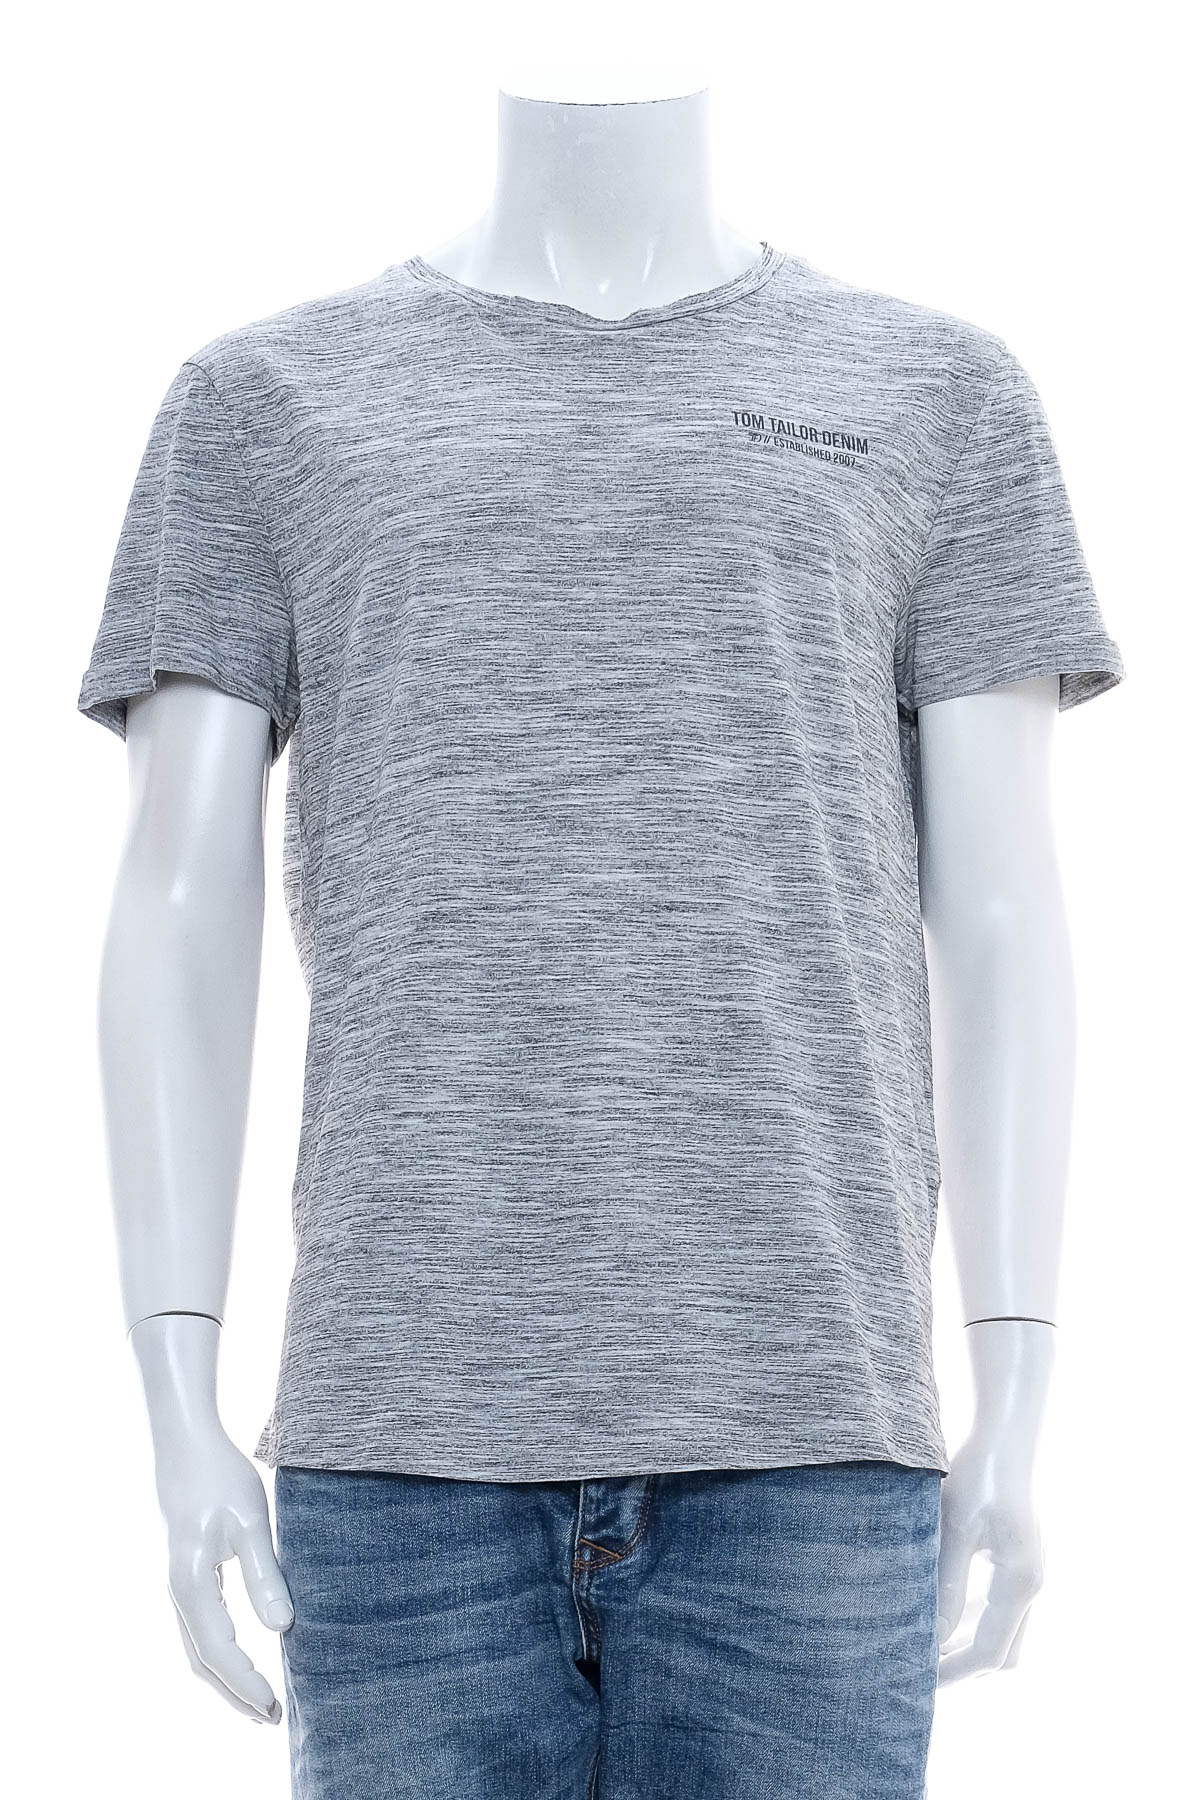 Men's T-shirt - TOM TAILOR Denim - 0